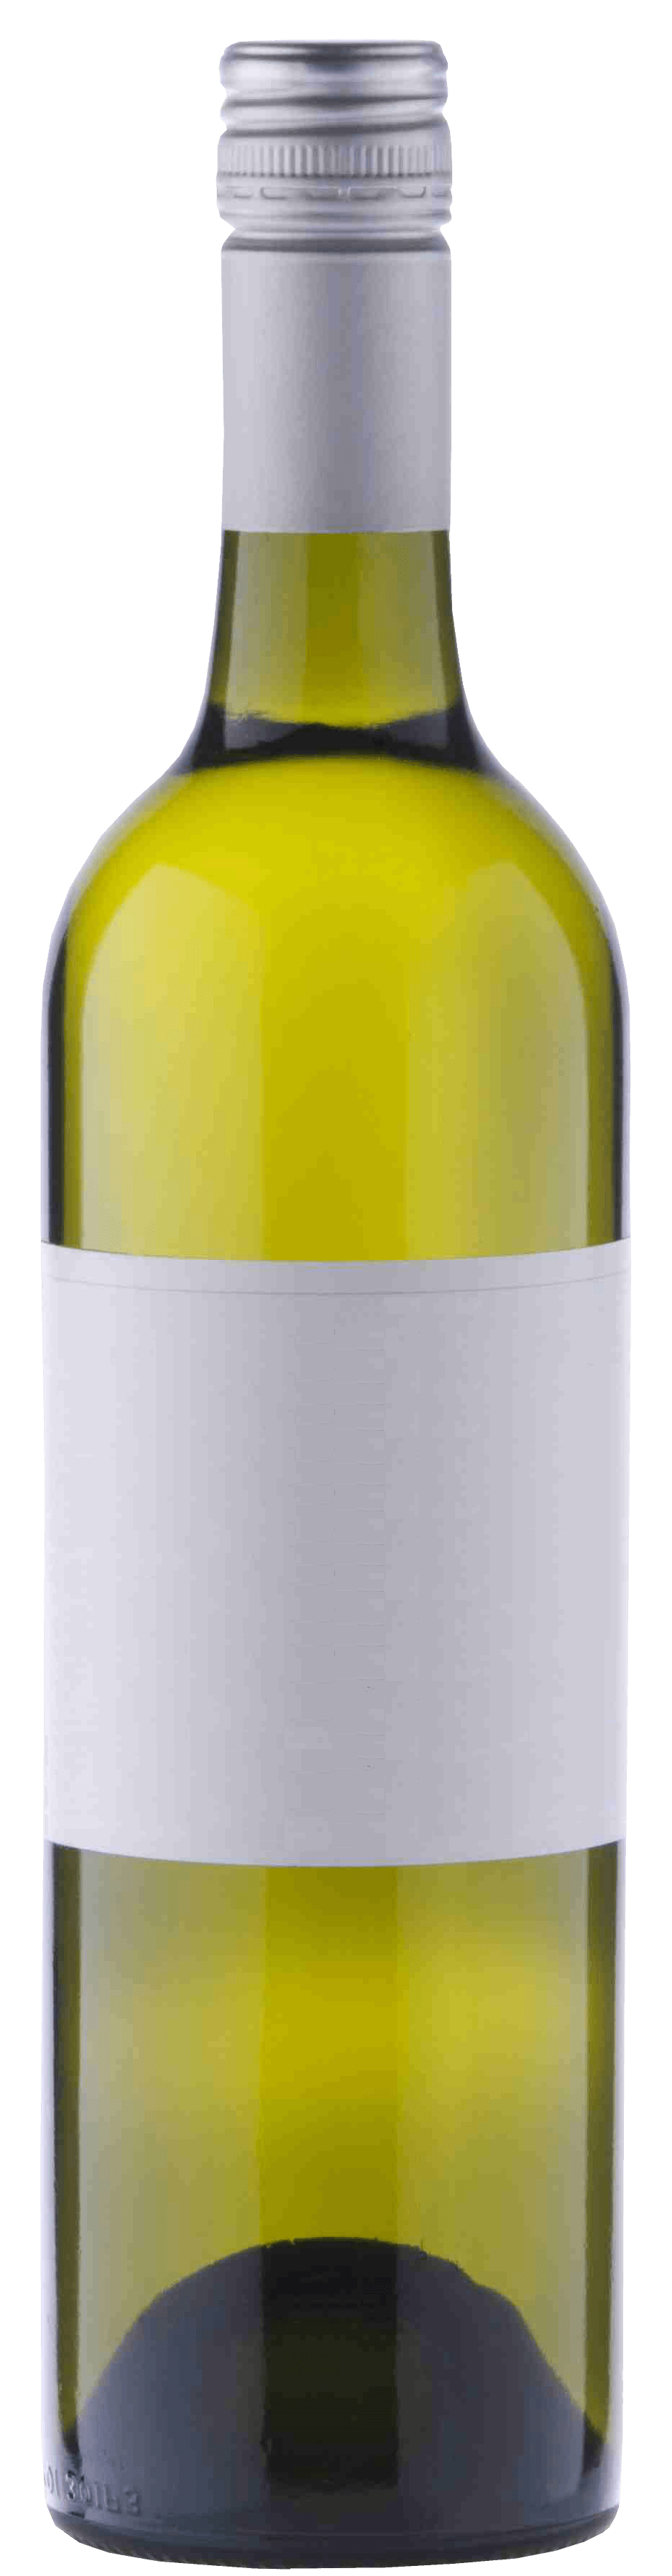 Wine Bottle Png Image PNG Image